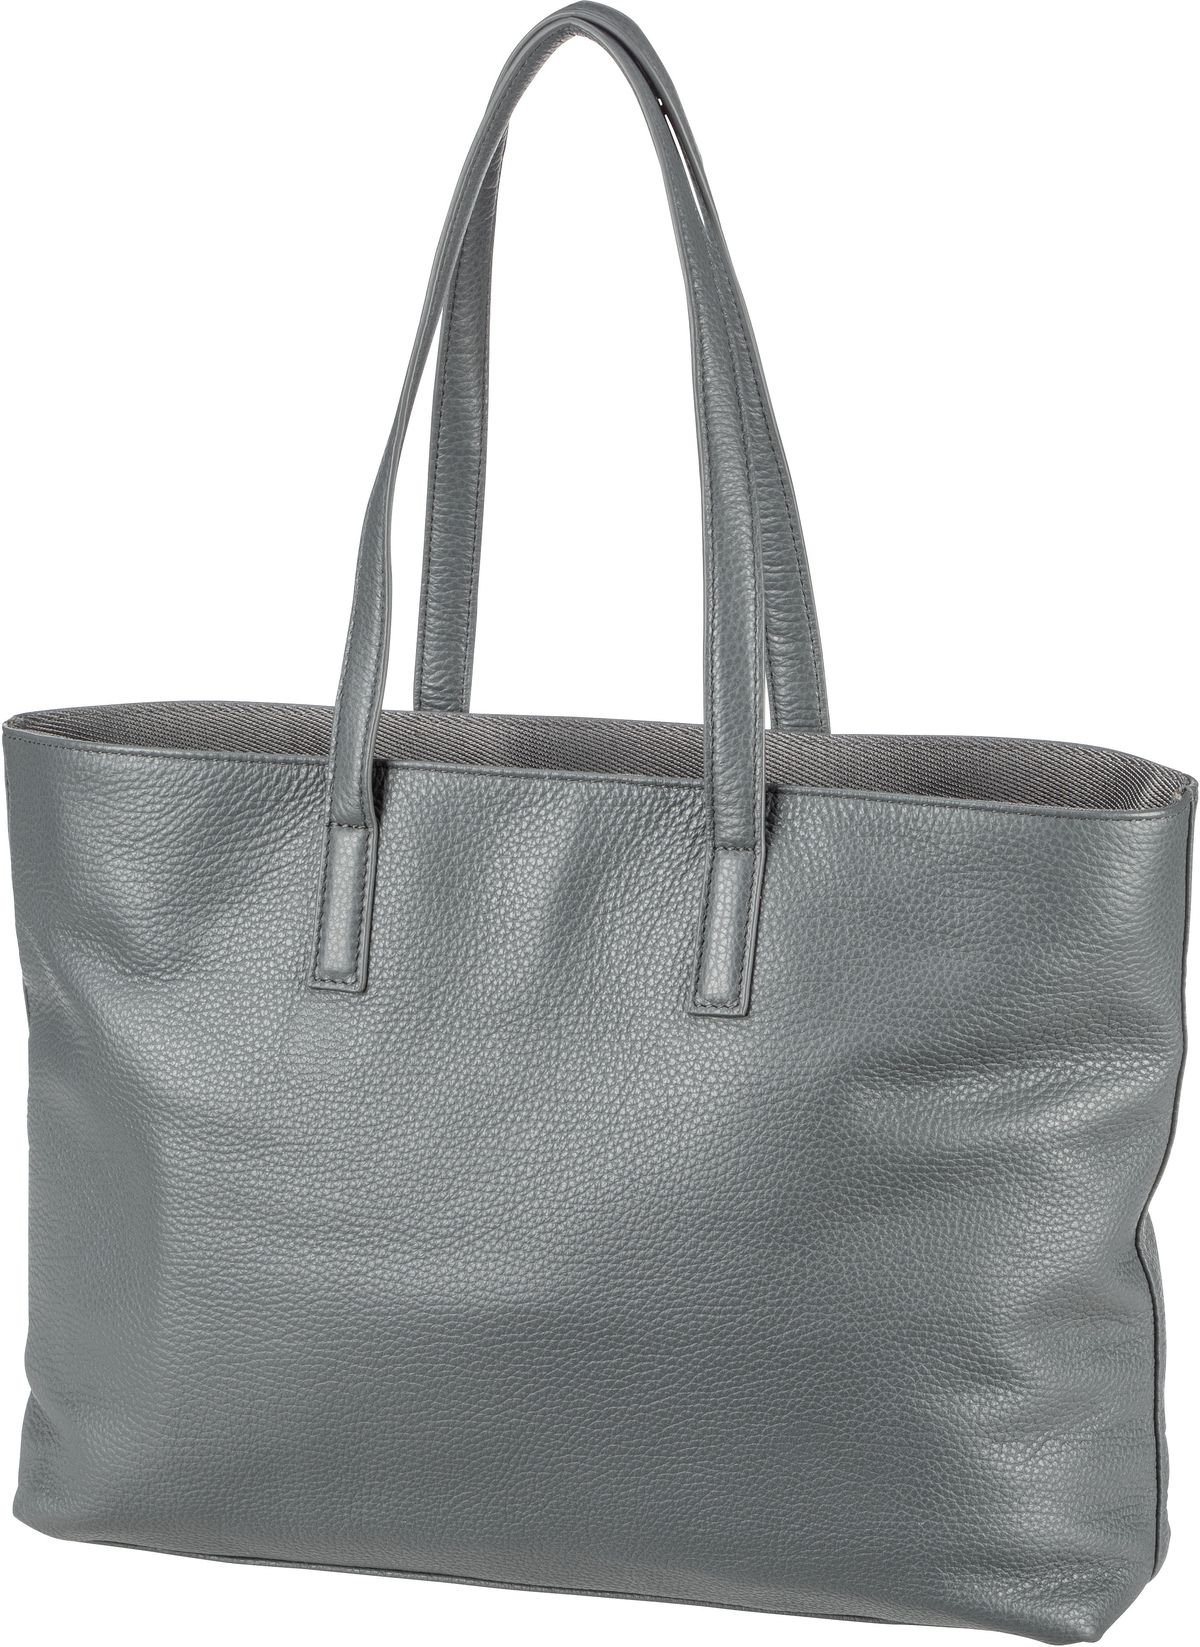 Mandarina Duck Mellow Leather Shopping Bag FZT24 - Iron Gate